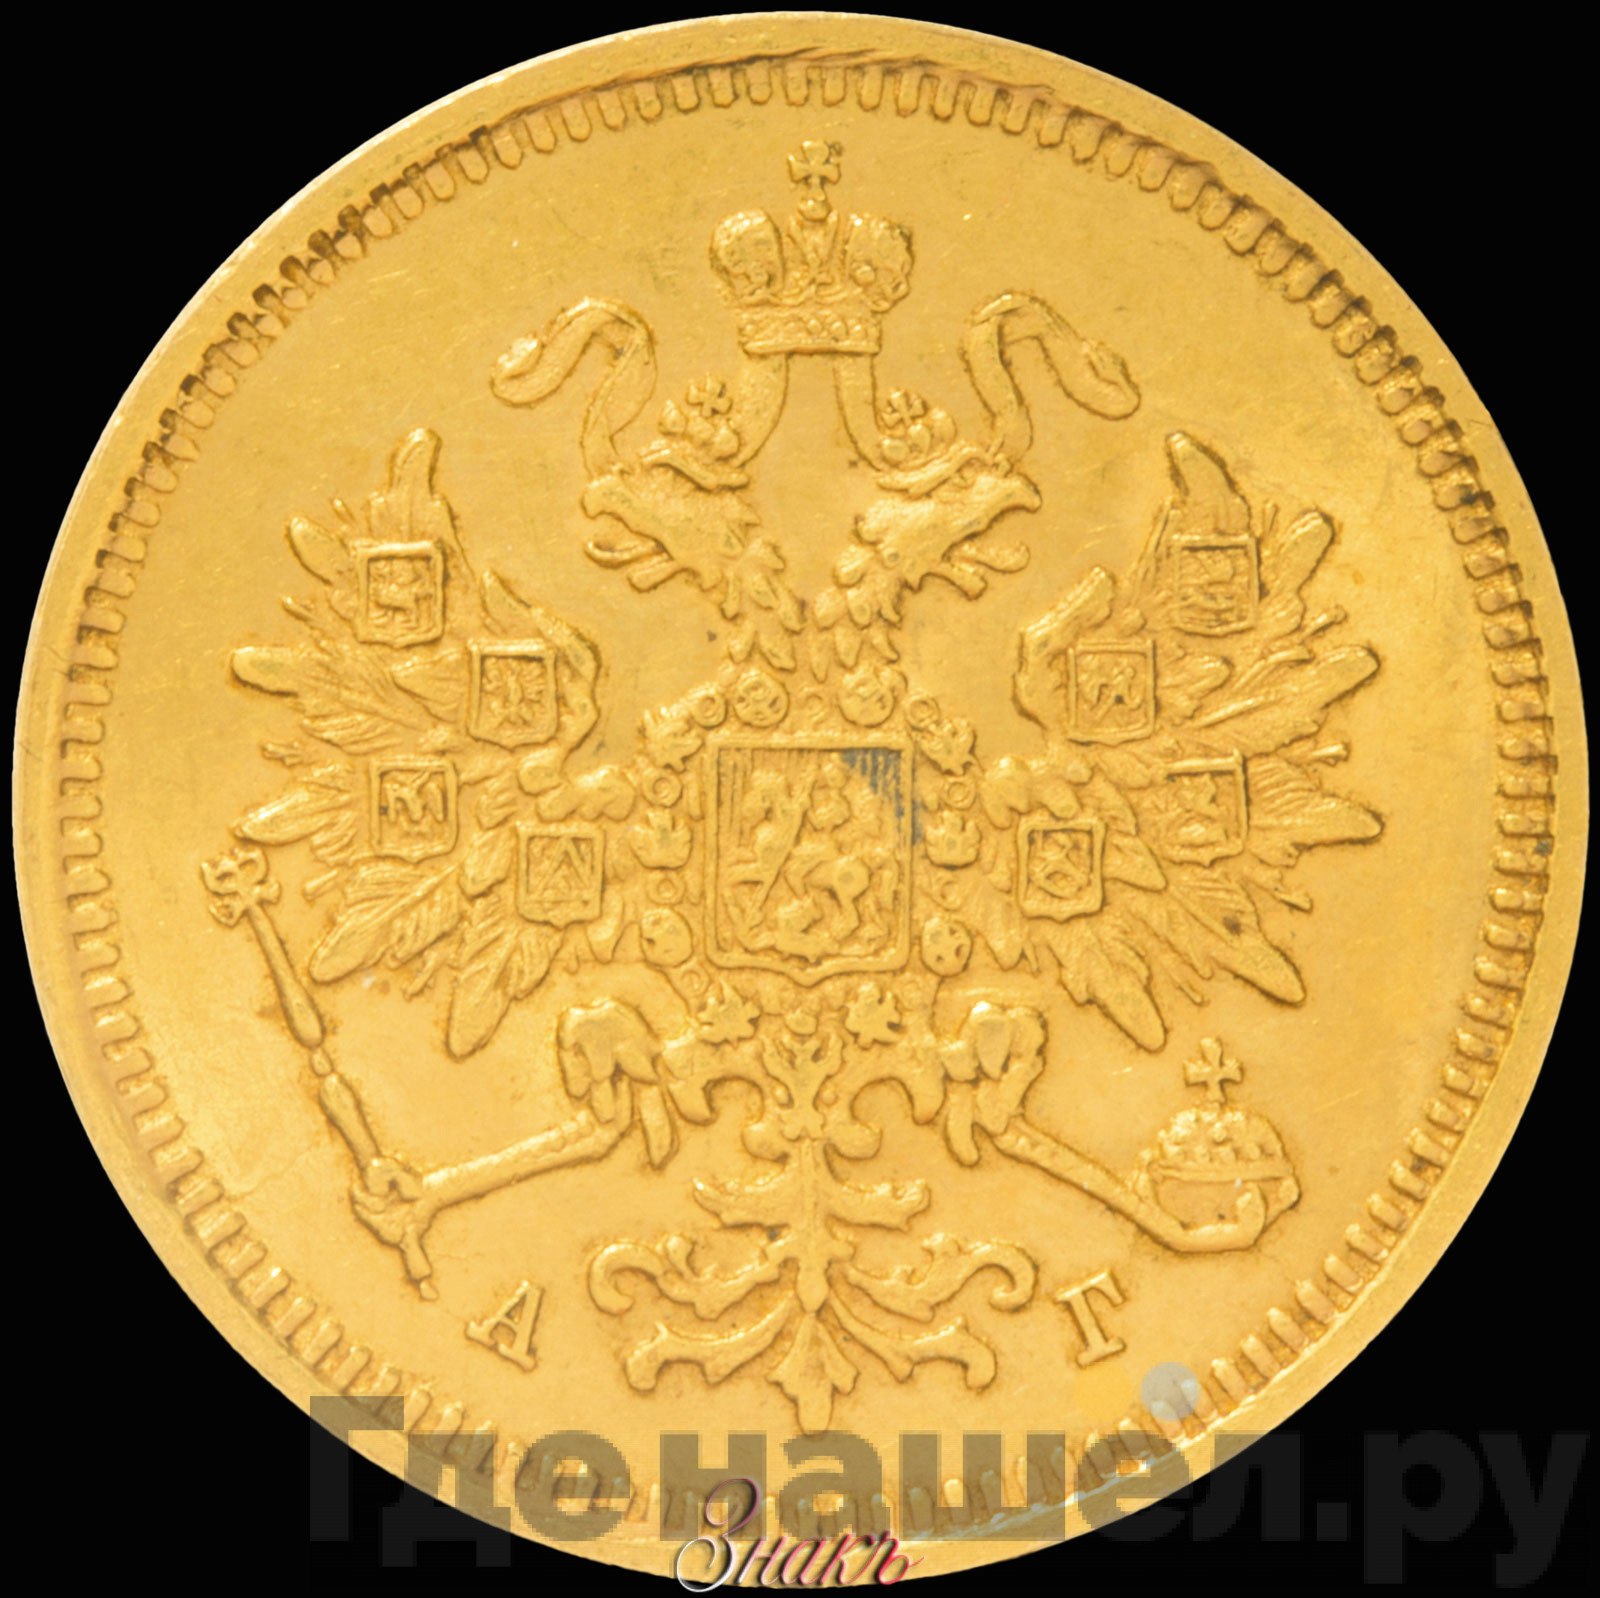 3 рубля 1885 года СПБ АГ